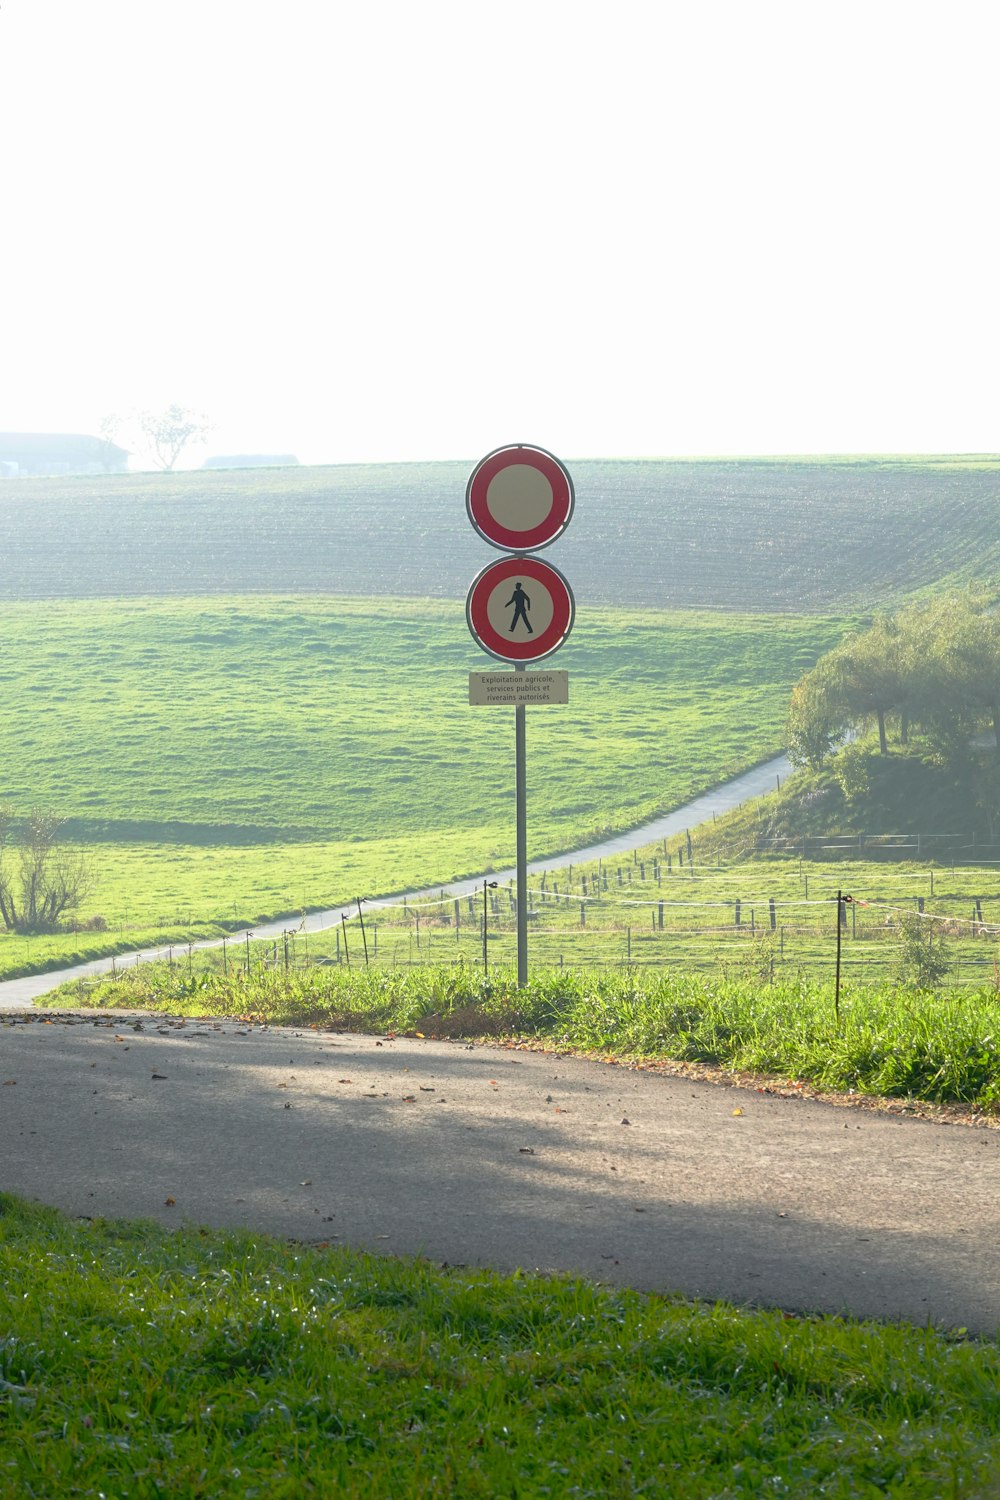  Un letrero rojo y blanco sentado al costado de una carretera